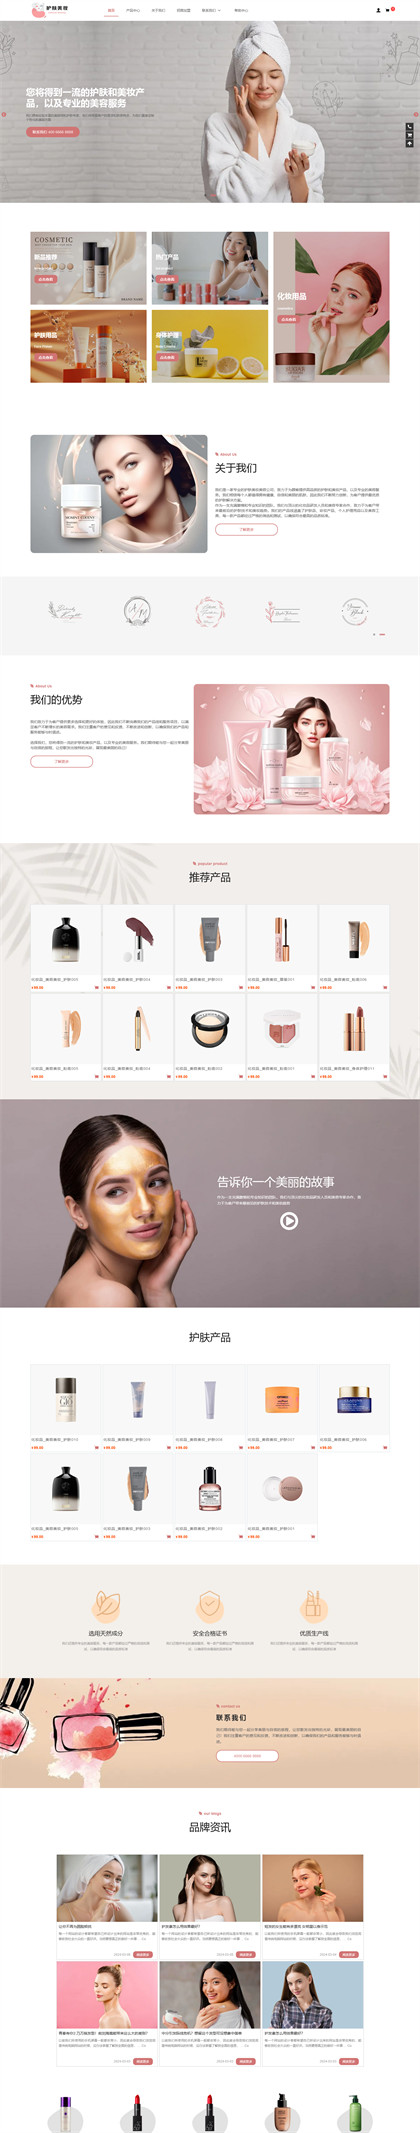 美容护肤-化妆品-护肤品-美妆公司商城网站模板网站模板图片